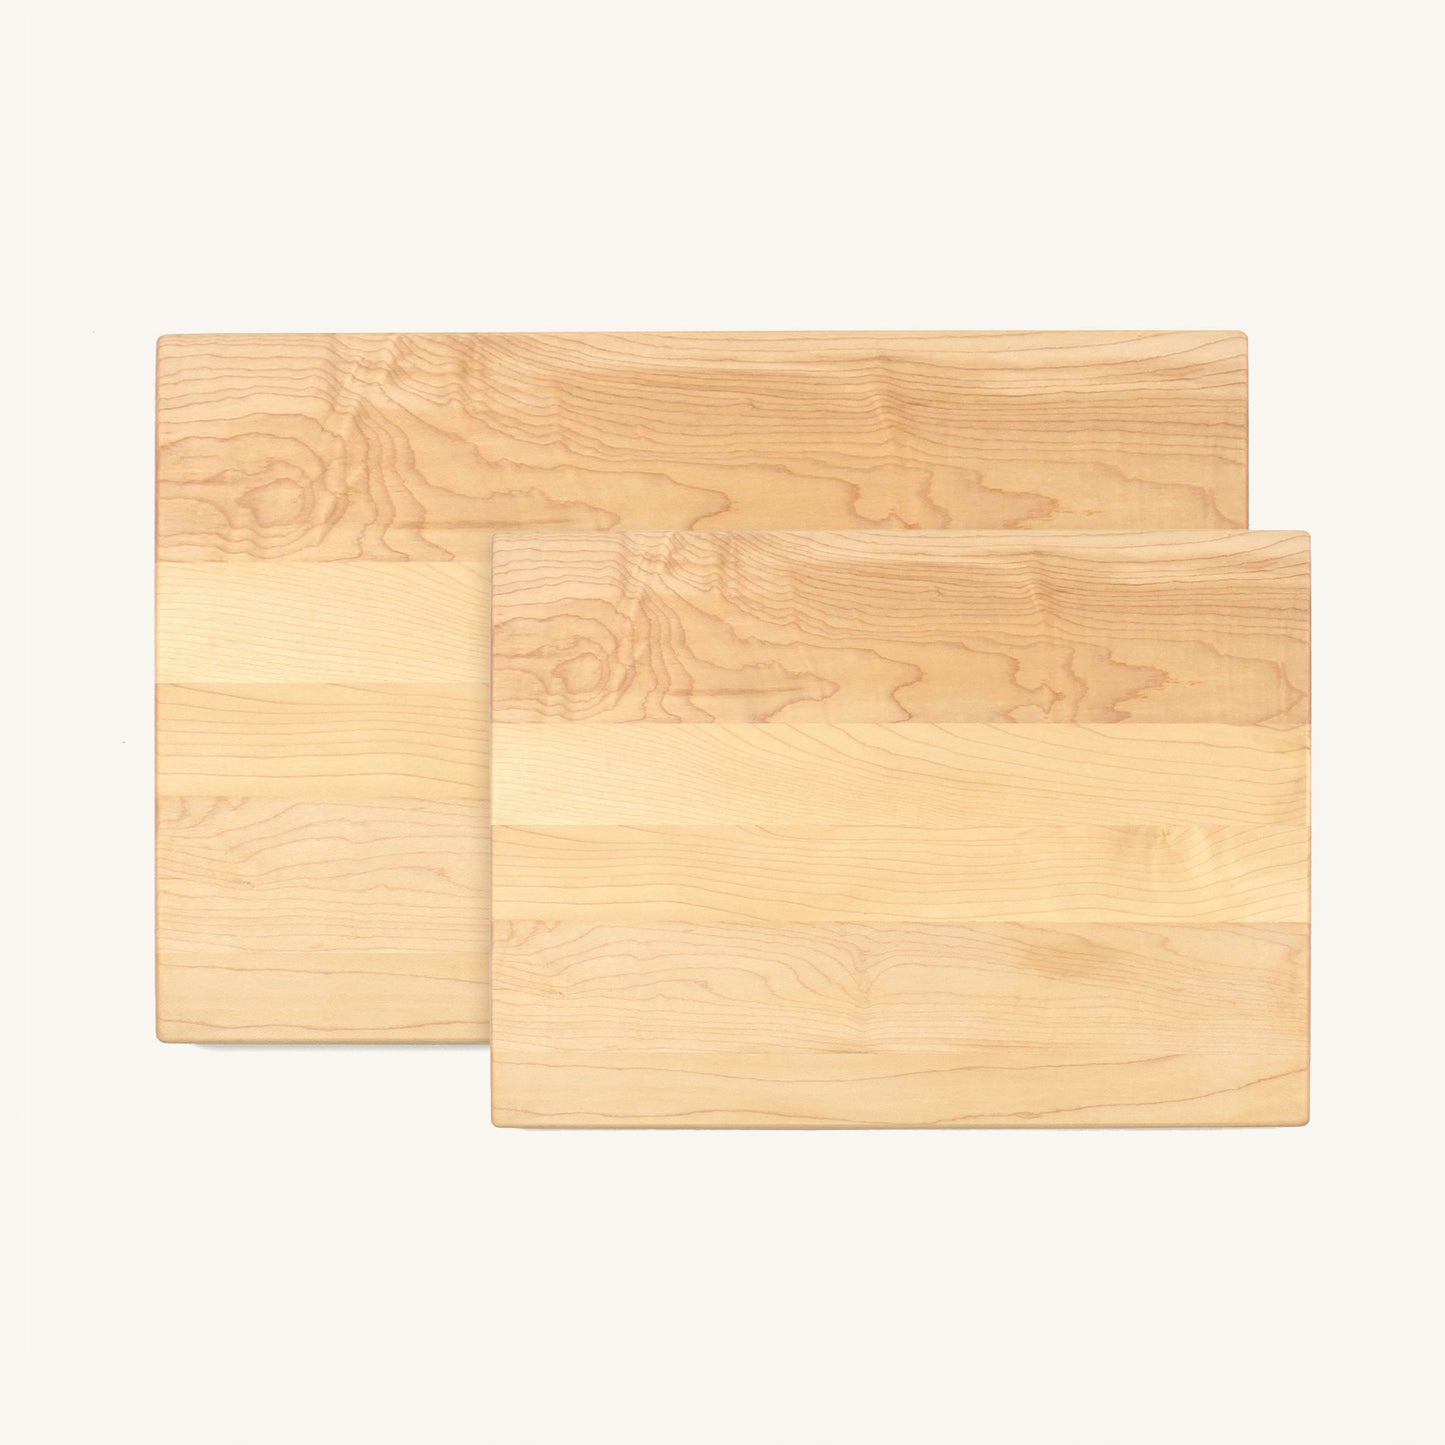 Paquete de tabla de cortar de madera mediana y grande con esquinas y bordes redondeados